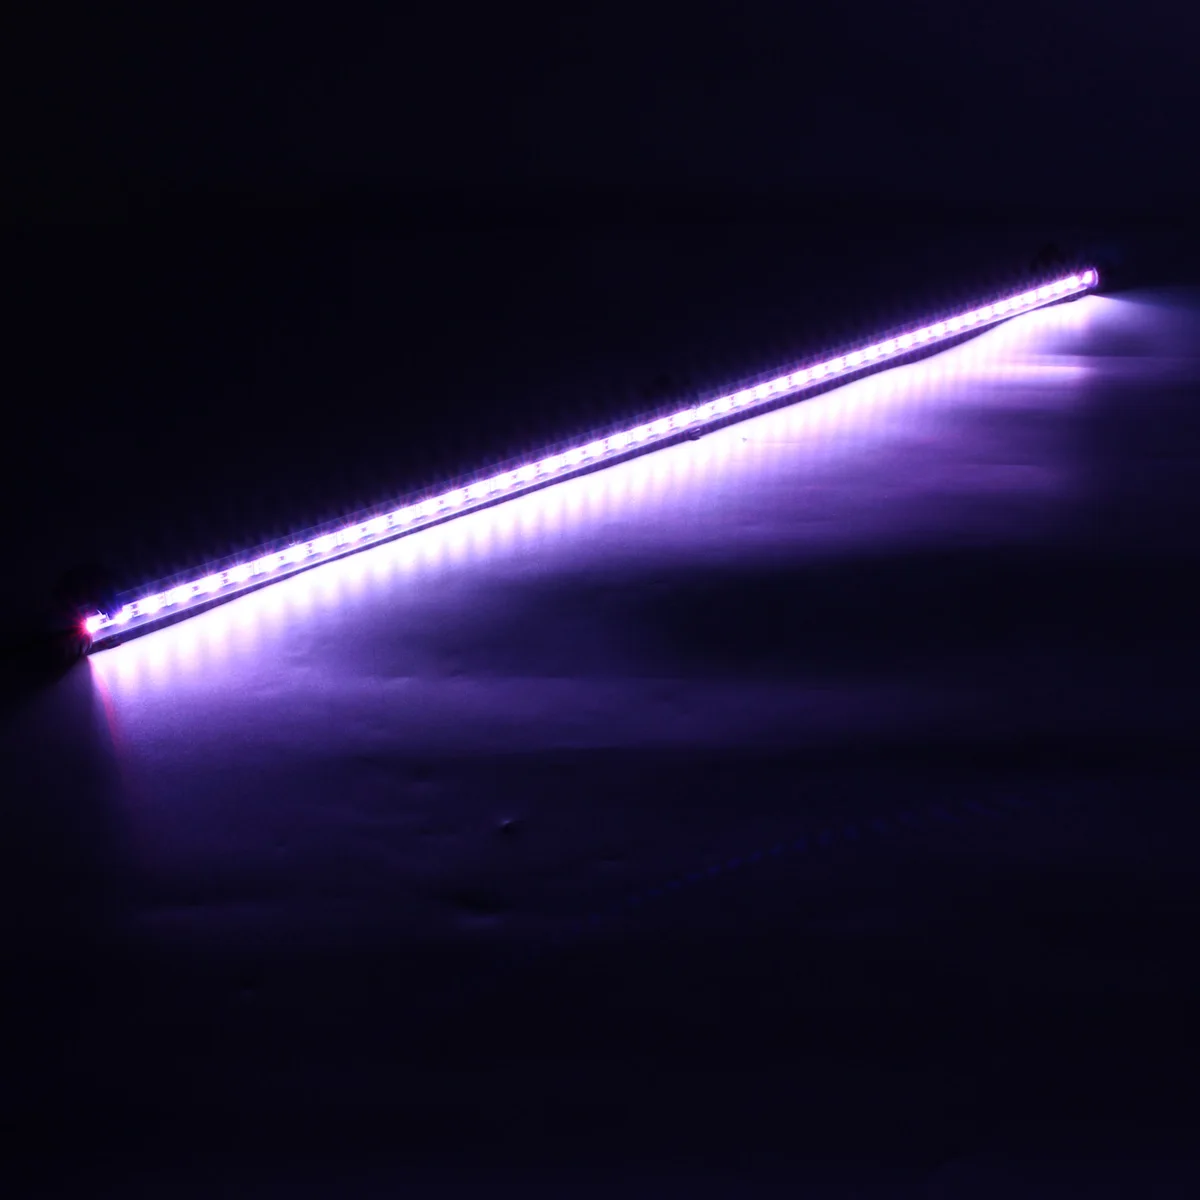 82 см светодиодный светильник для аквариума, барная ЛАМПА IP68, погружной RGB пульт дистанционного управления 5050 SMD 110-240 В, штепсельная Вилка для ЕС/США/Великобритании/Австралии